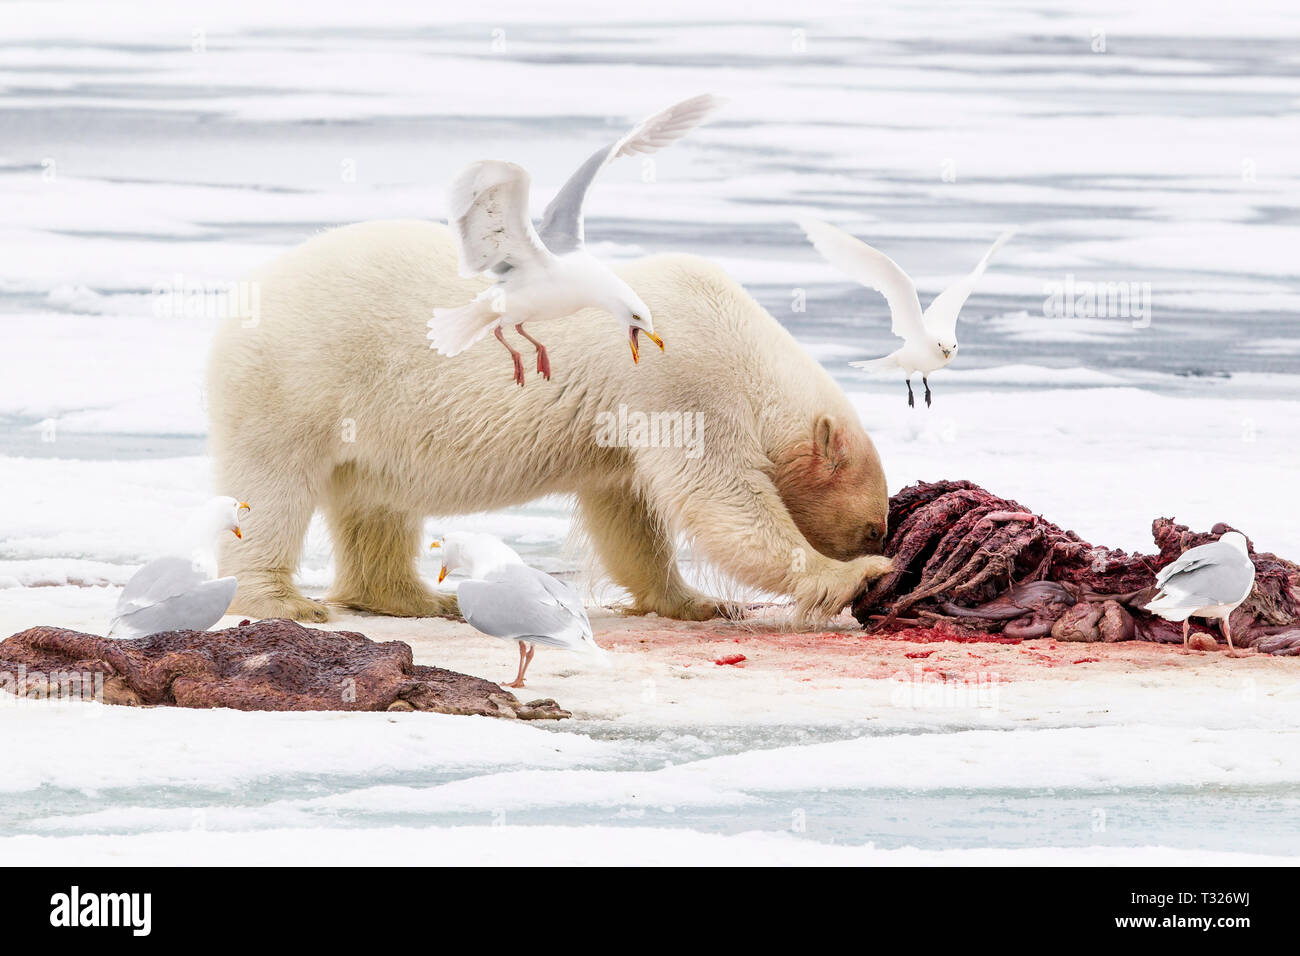 L'alimentation de l'ours polaire, le morse morts Ursus maritimus, Spitzberg, l'océan Arctique, en Norvège Banque D'Images